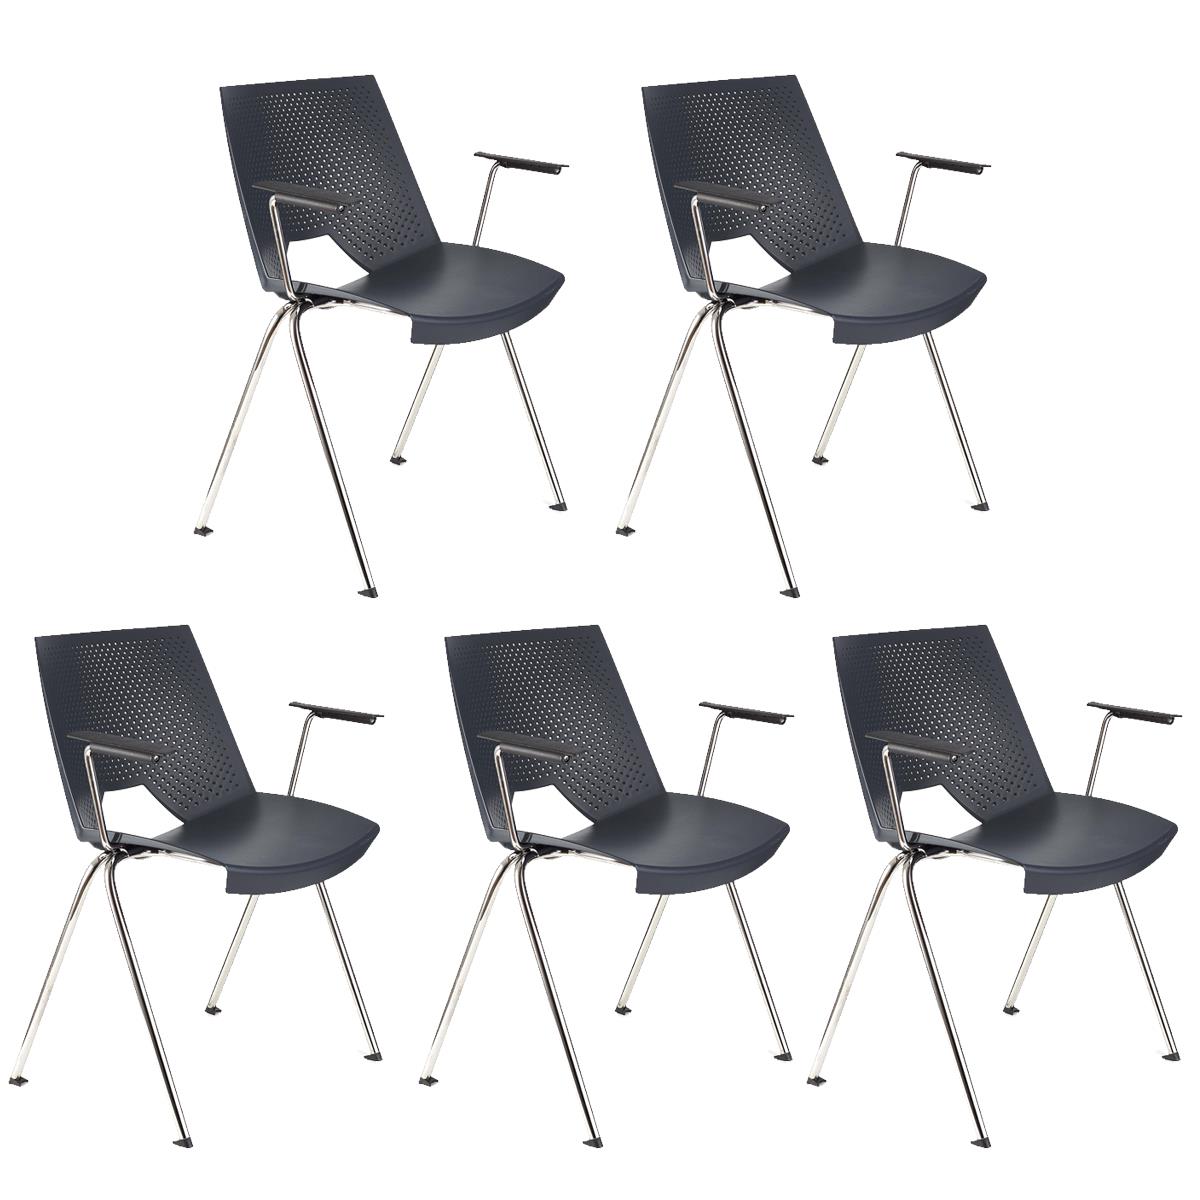 Lote de 5 sillas de Confidente ENZO CON BRAZOS, Cómodas y Prácticas, Apilables, Color Gris